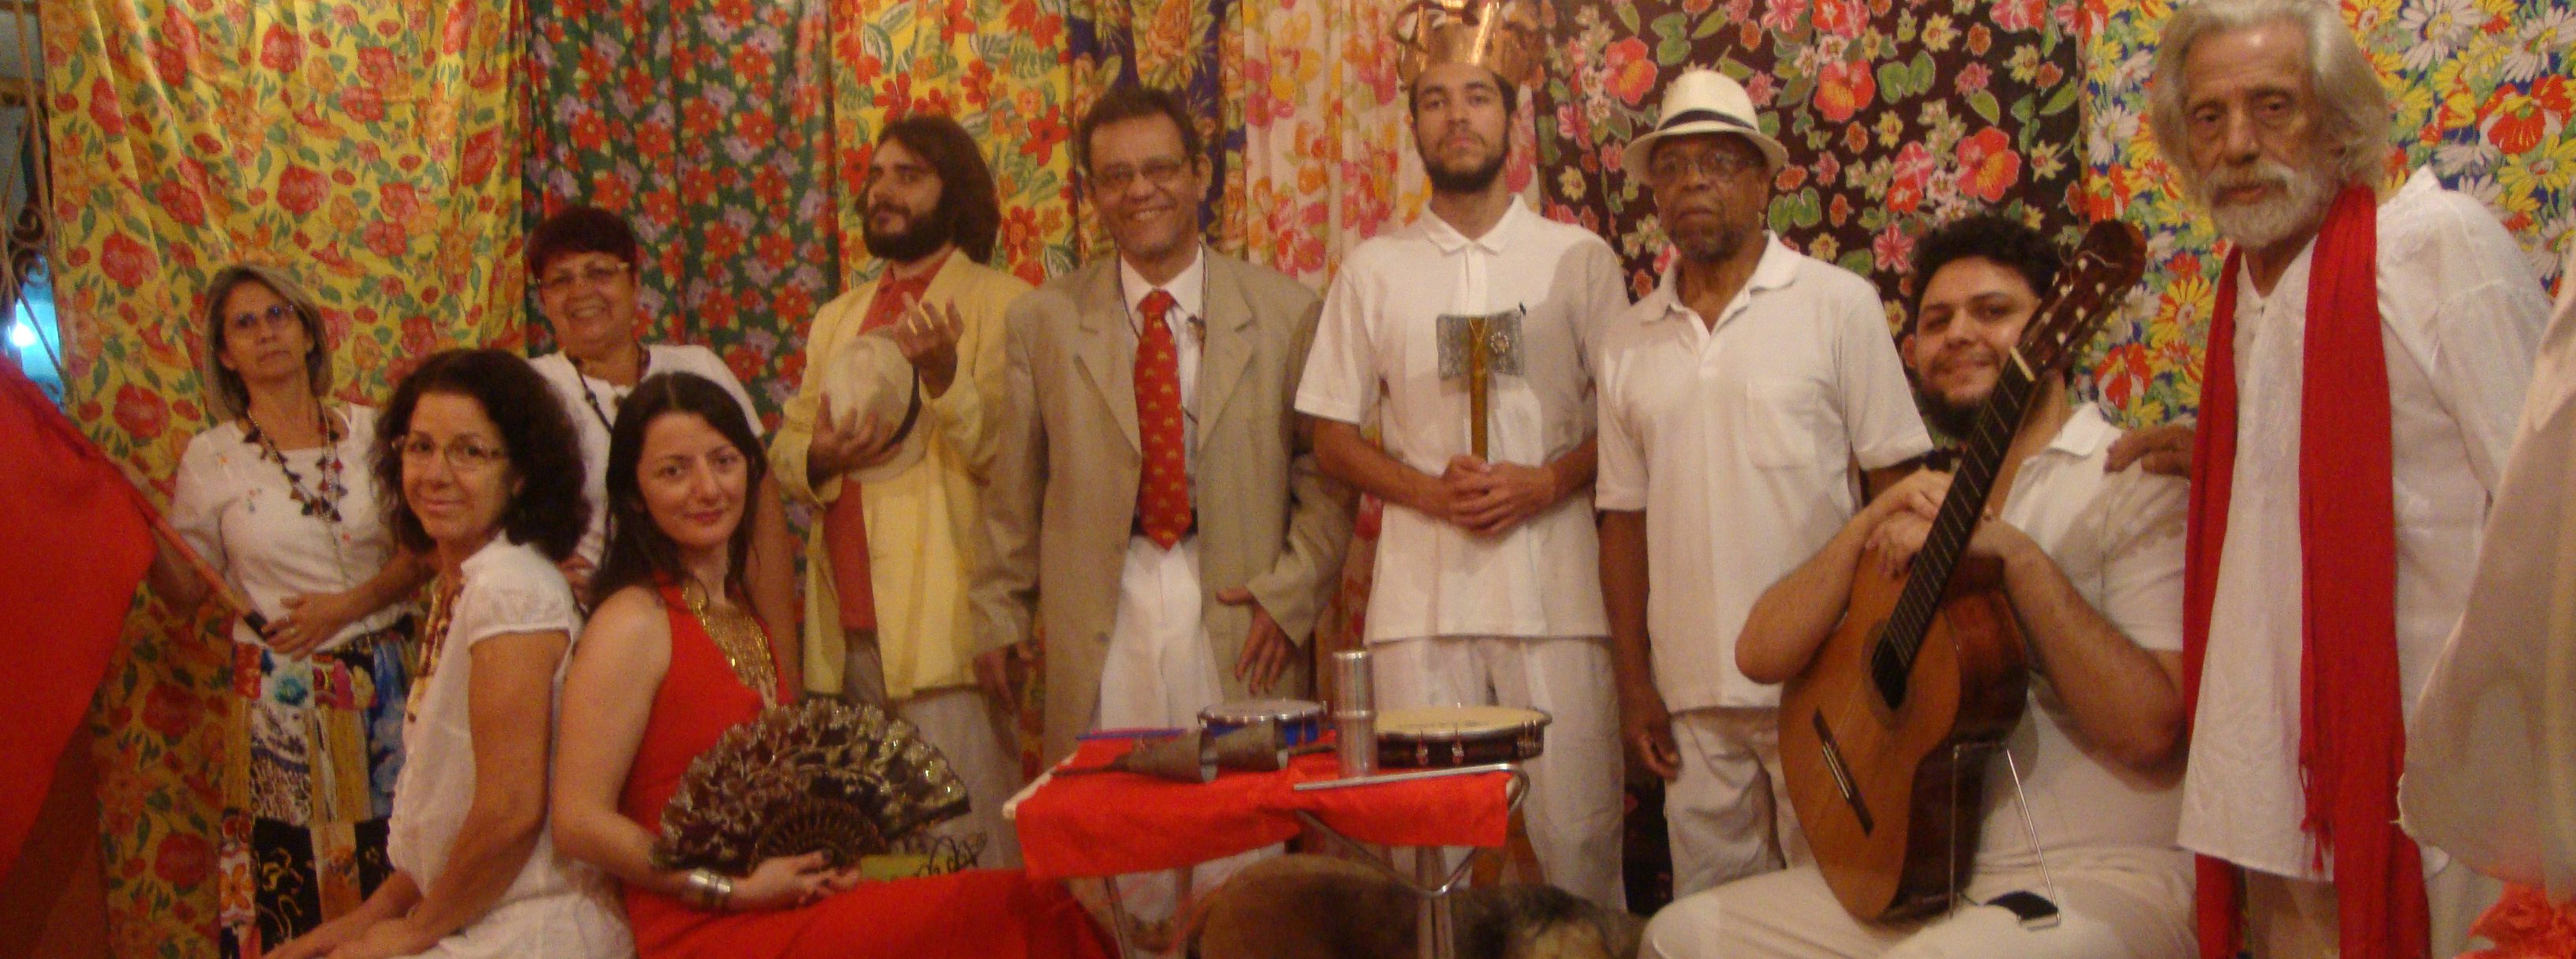 Jorge Amado é homenageado com show musical gratuito na Casa de Dona Yayá